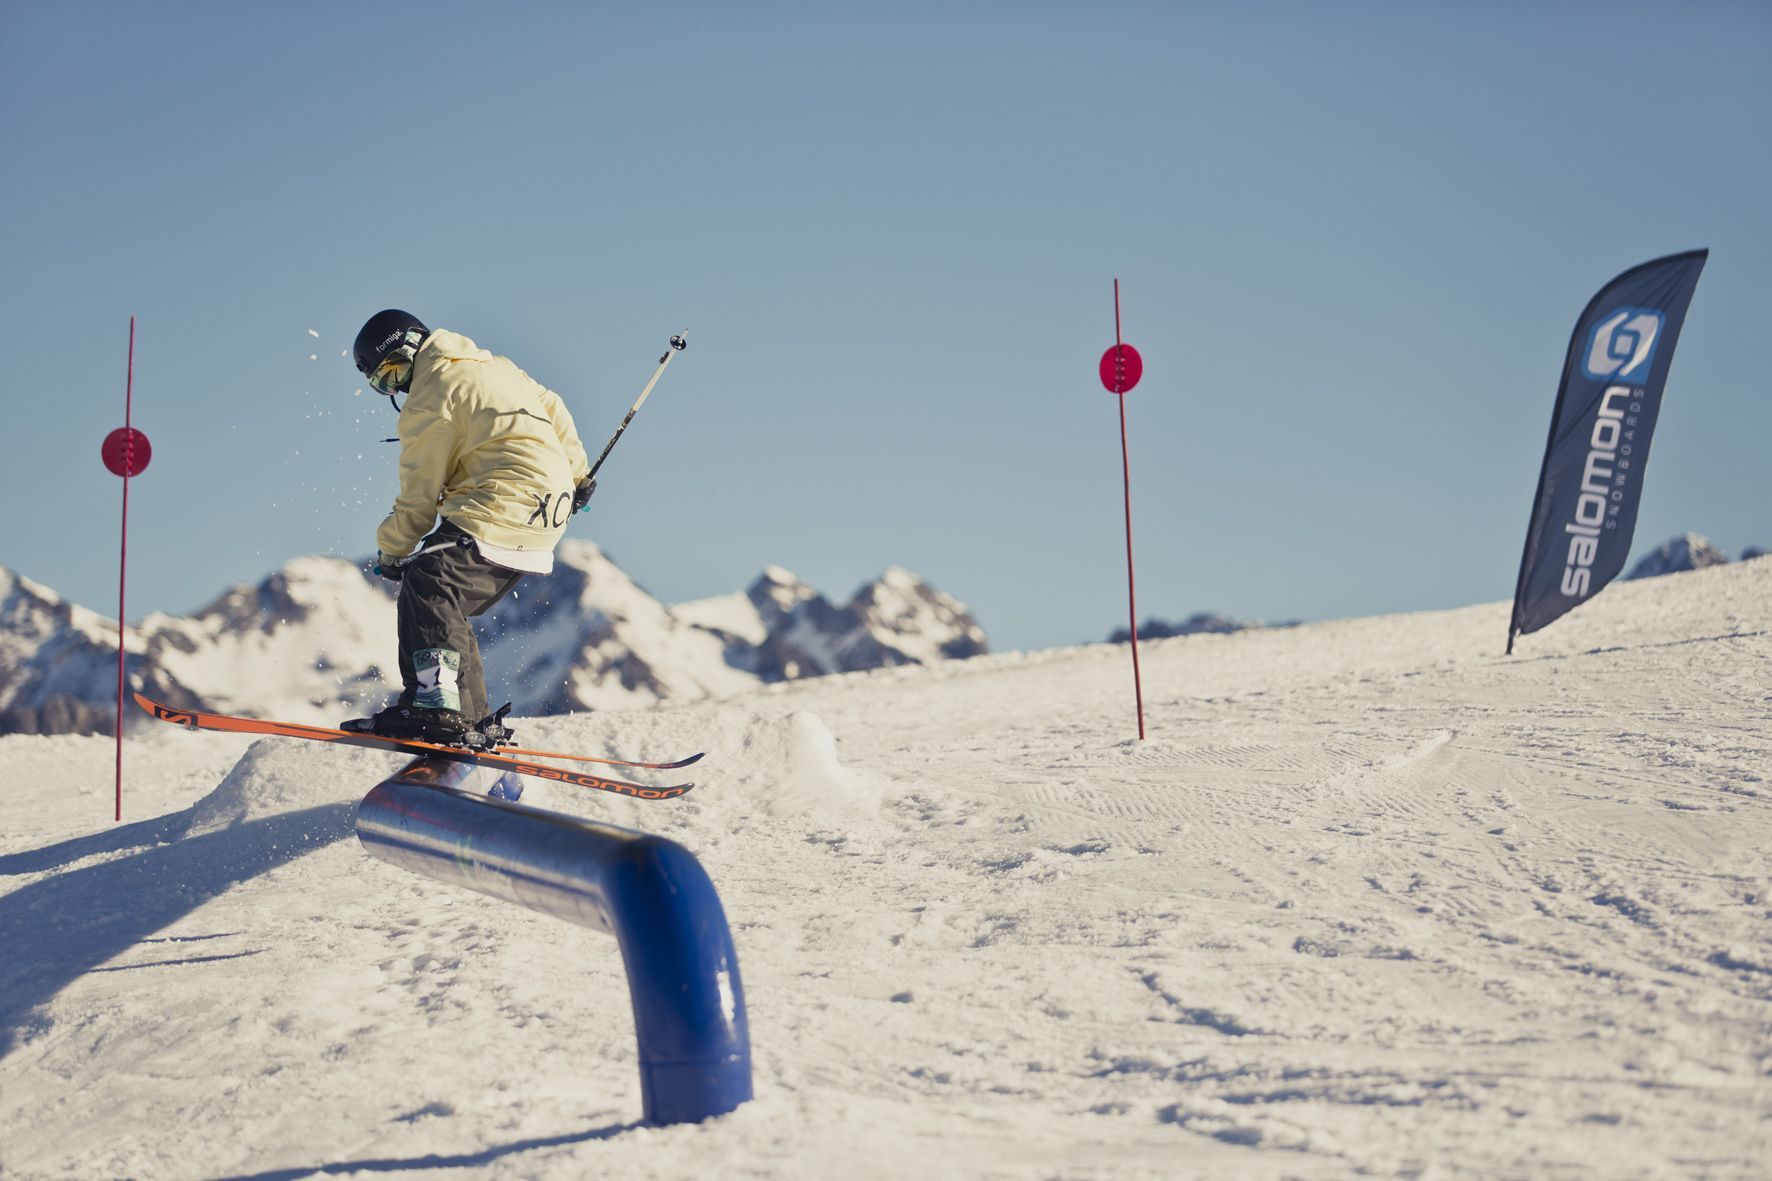 Snowboard Formigal